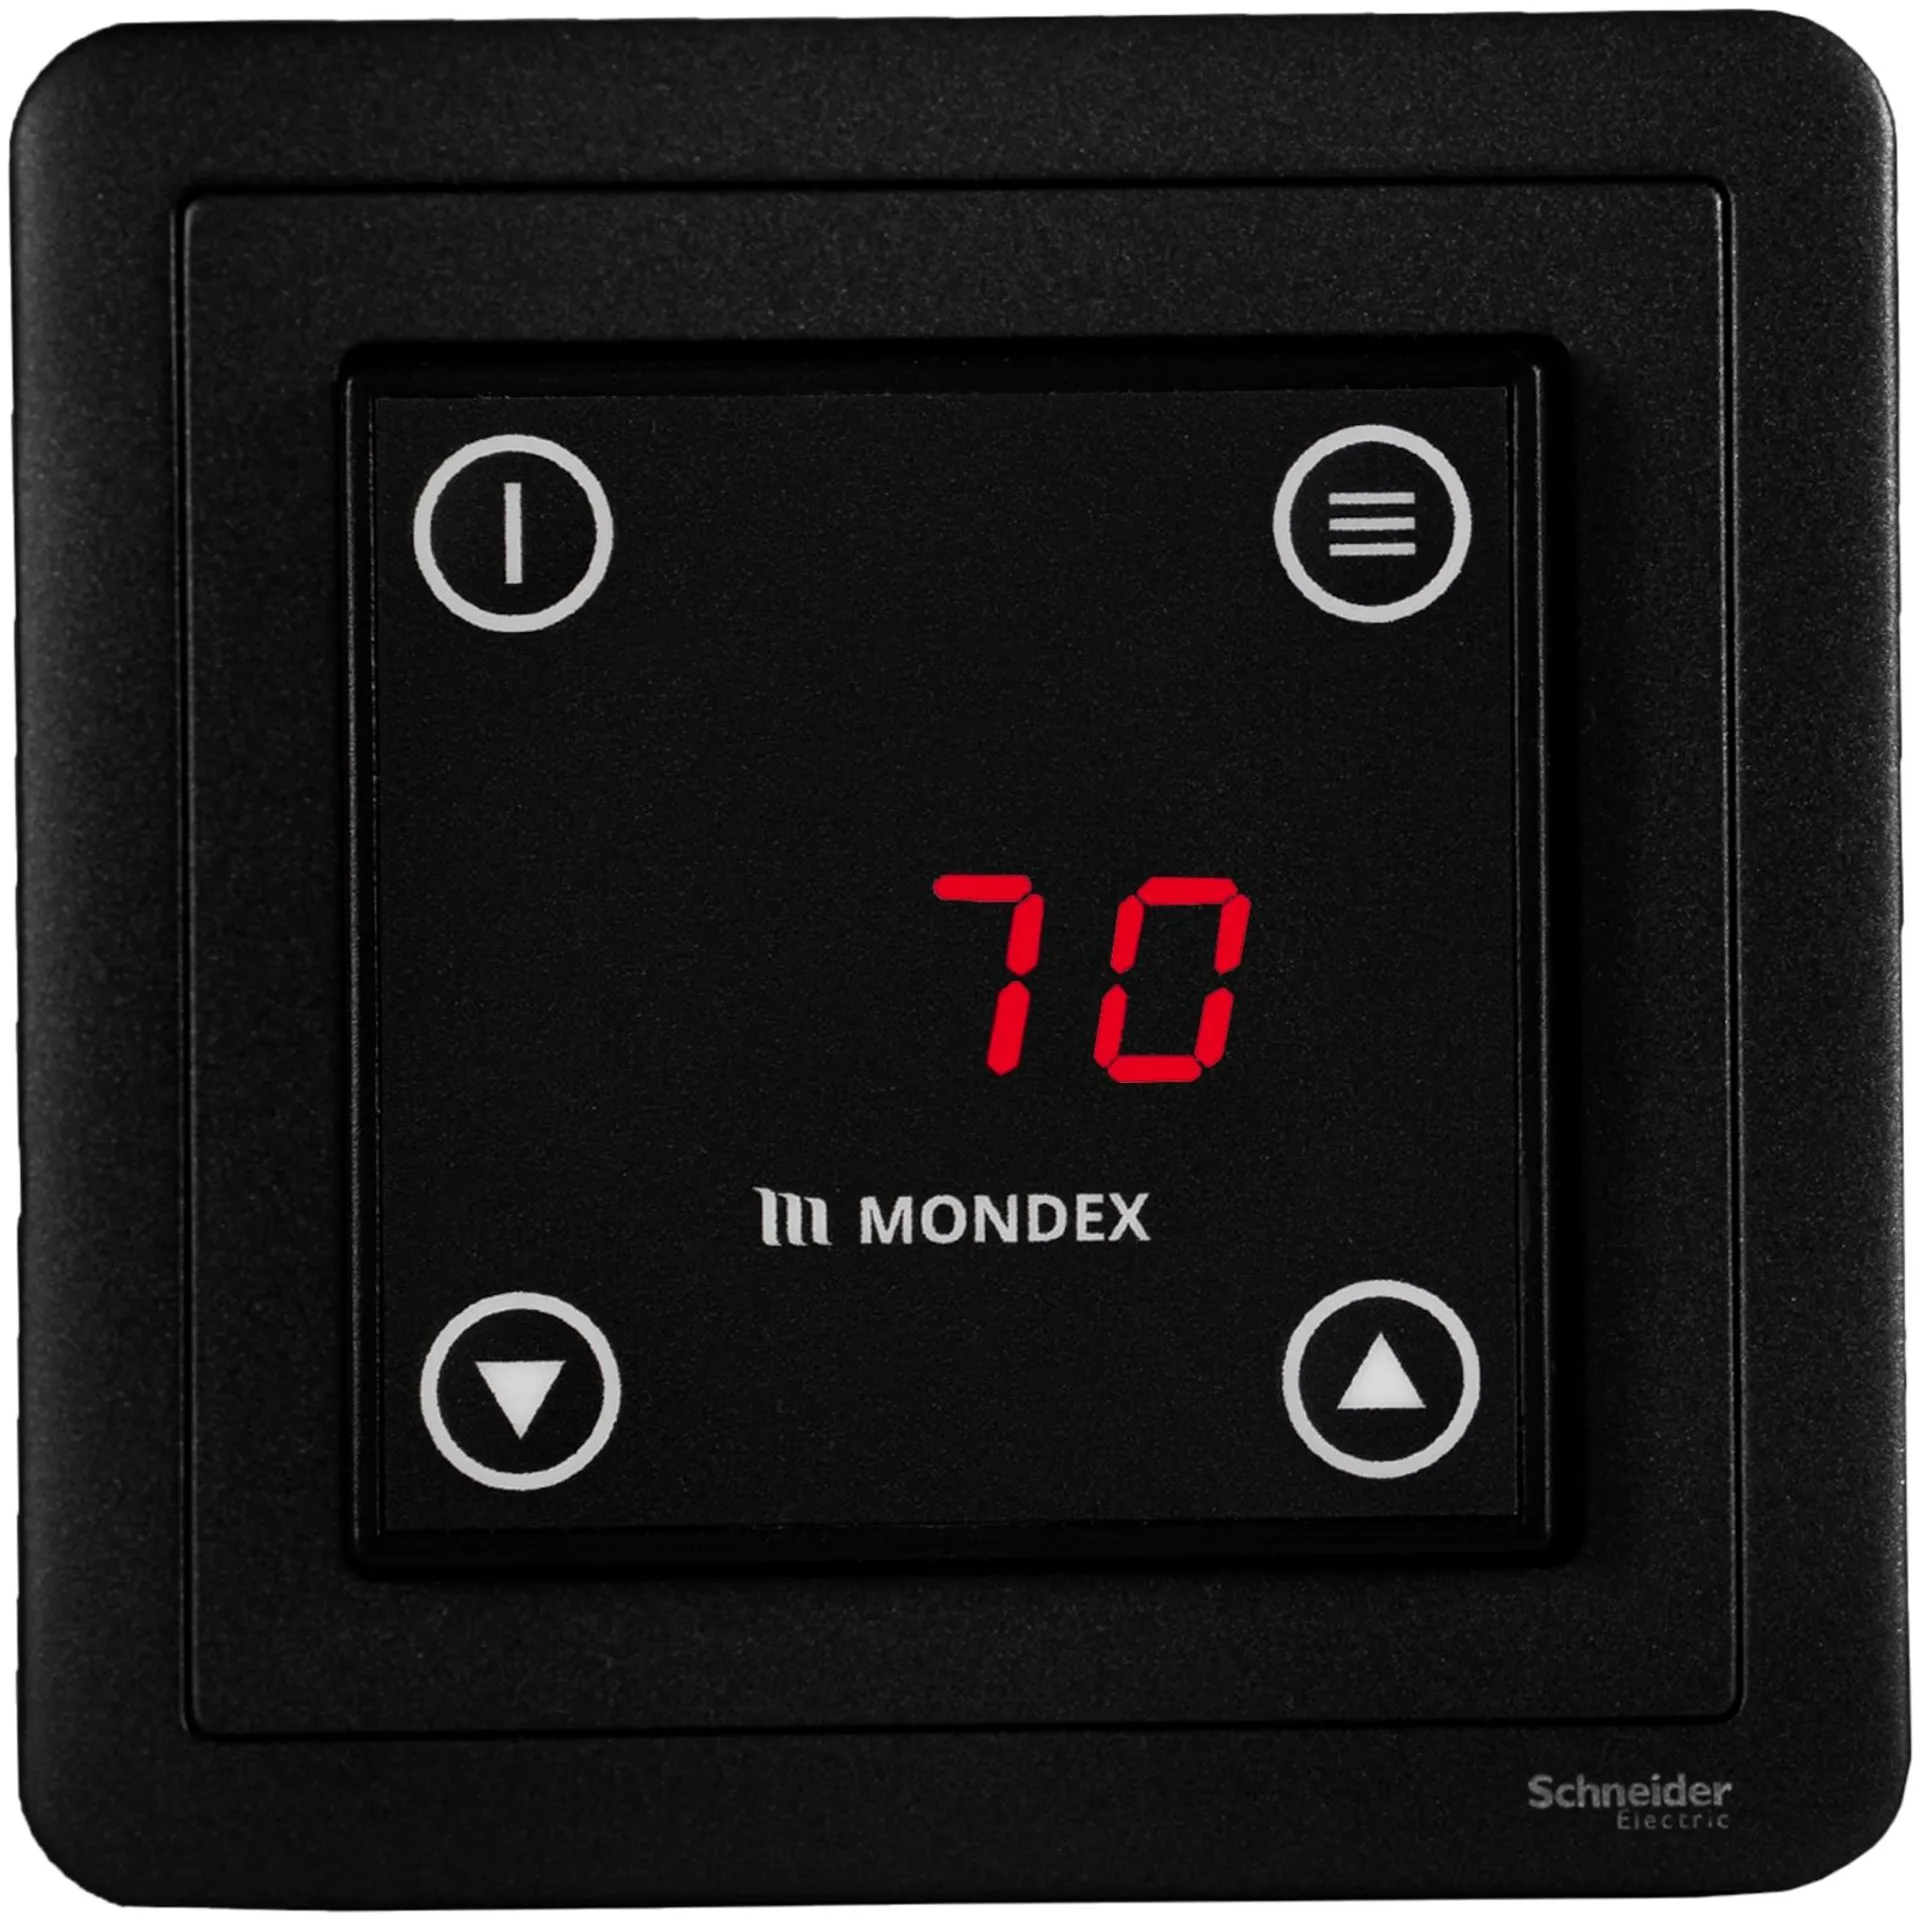 Sähkökiuas Mondex Tahko E2 6.6 KW rst - 2